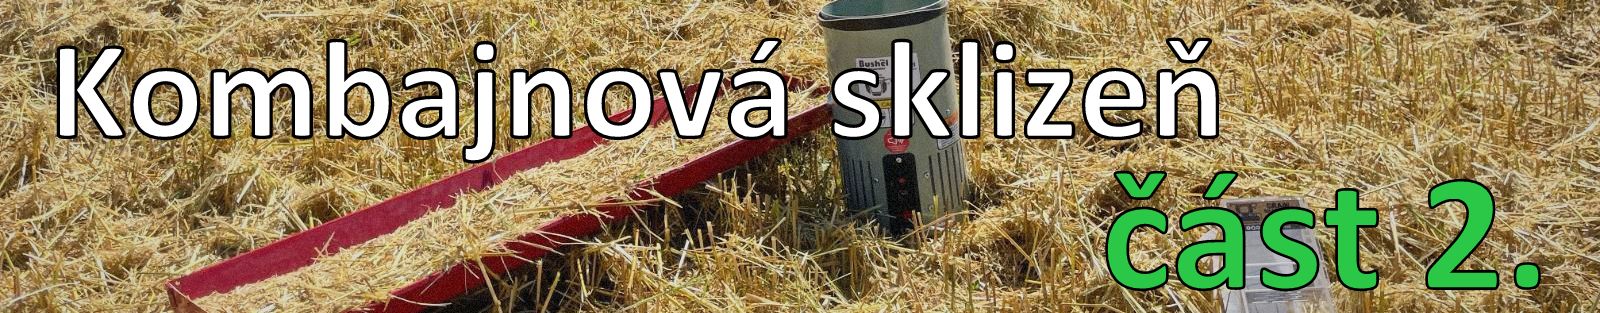 www.harvestlove.czKveten